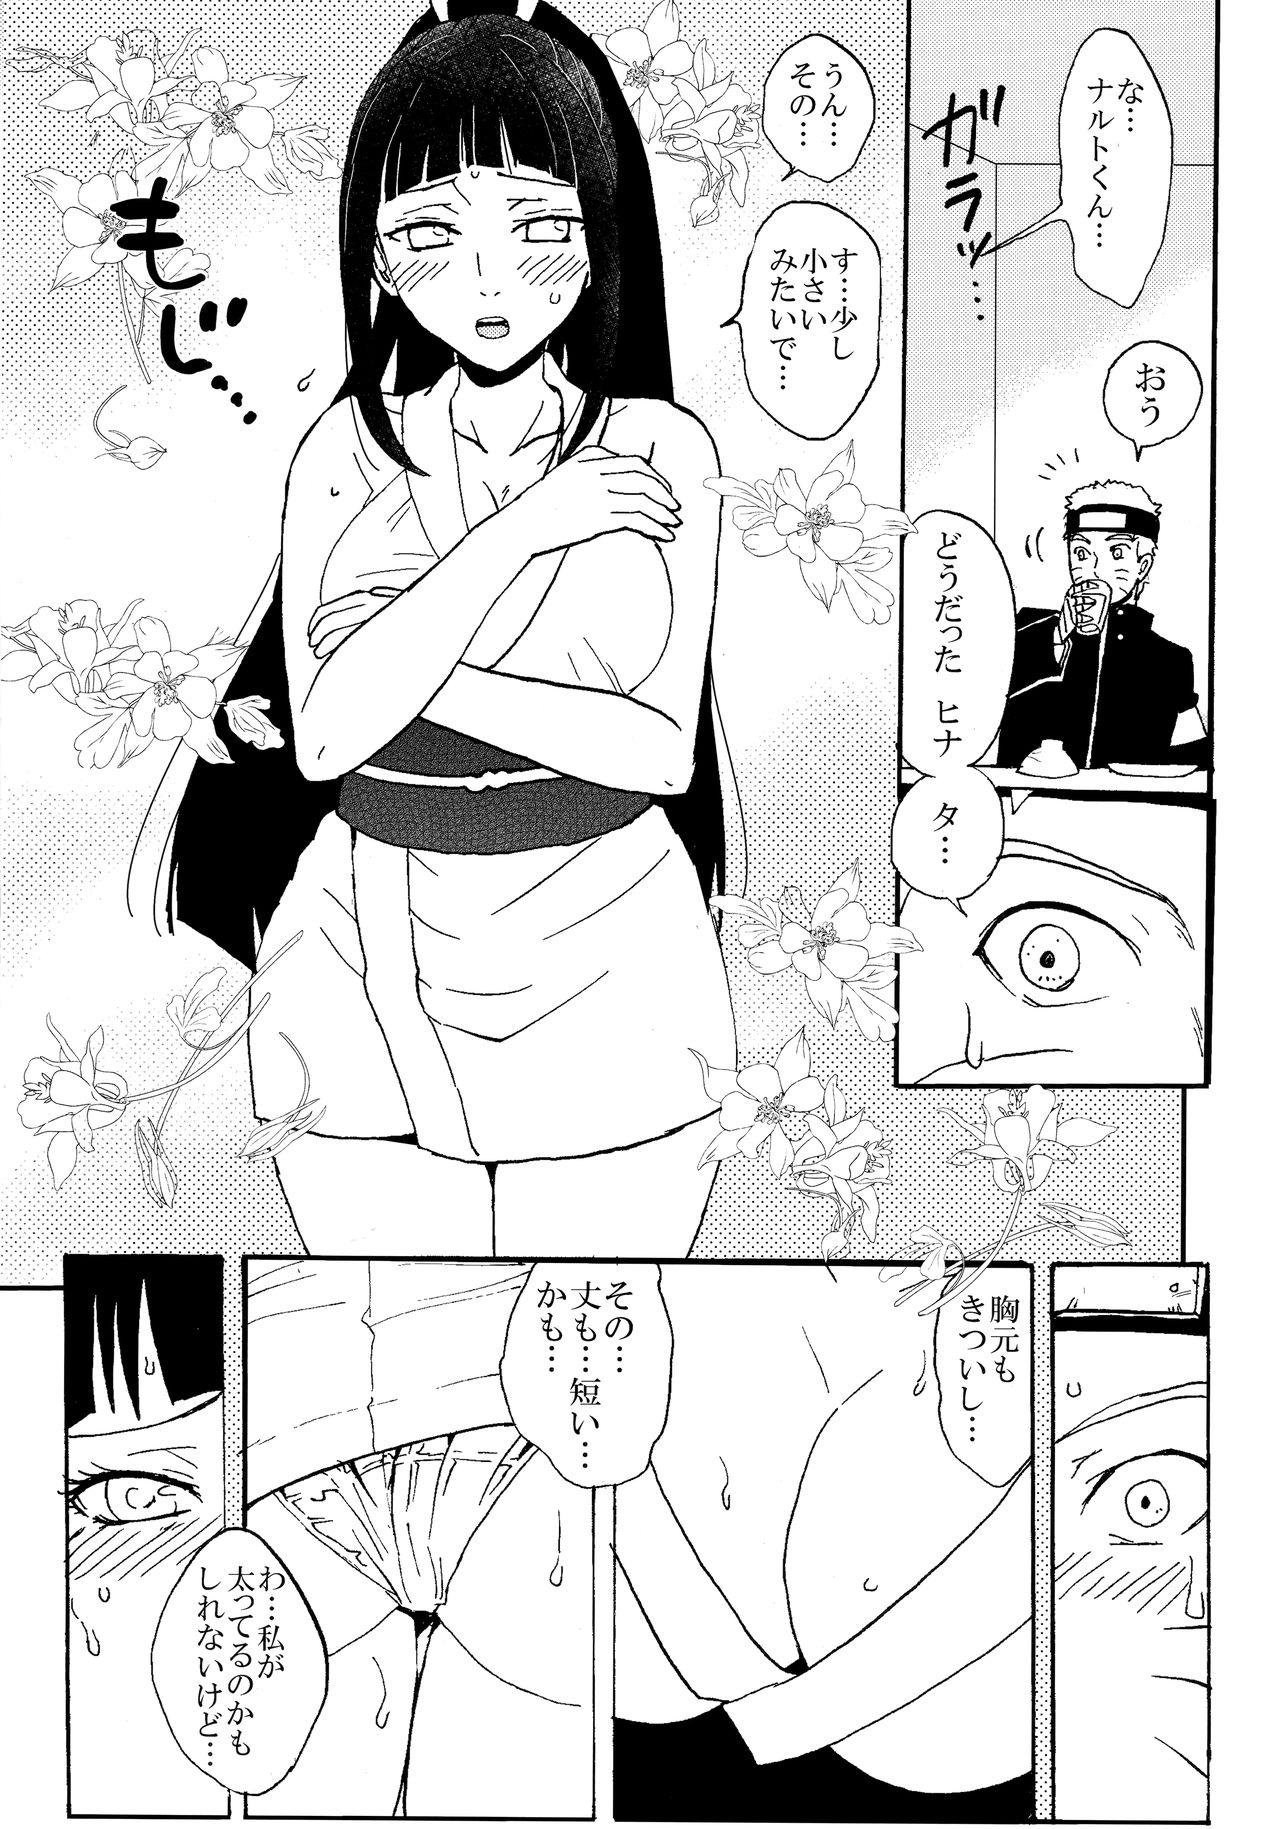 Hardcore Sex Shinkon Hinata no Kunoichi Cosplay datteba yo! - Naruto Love - Page 4